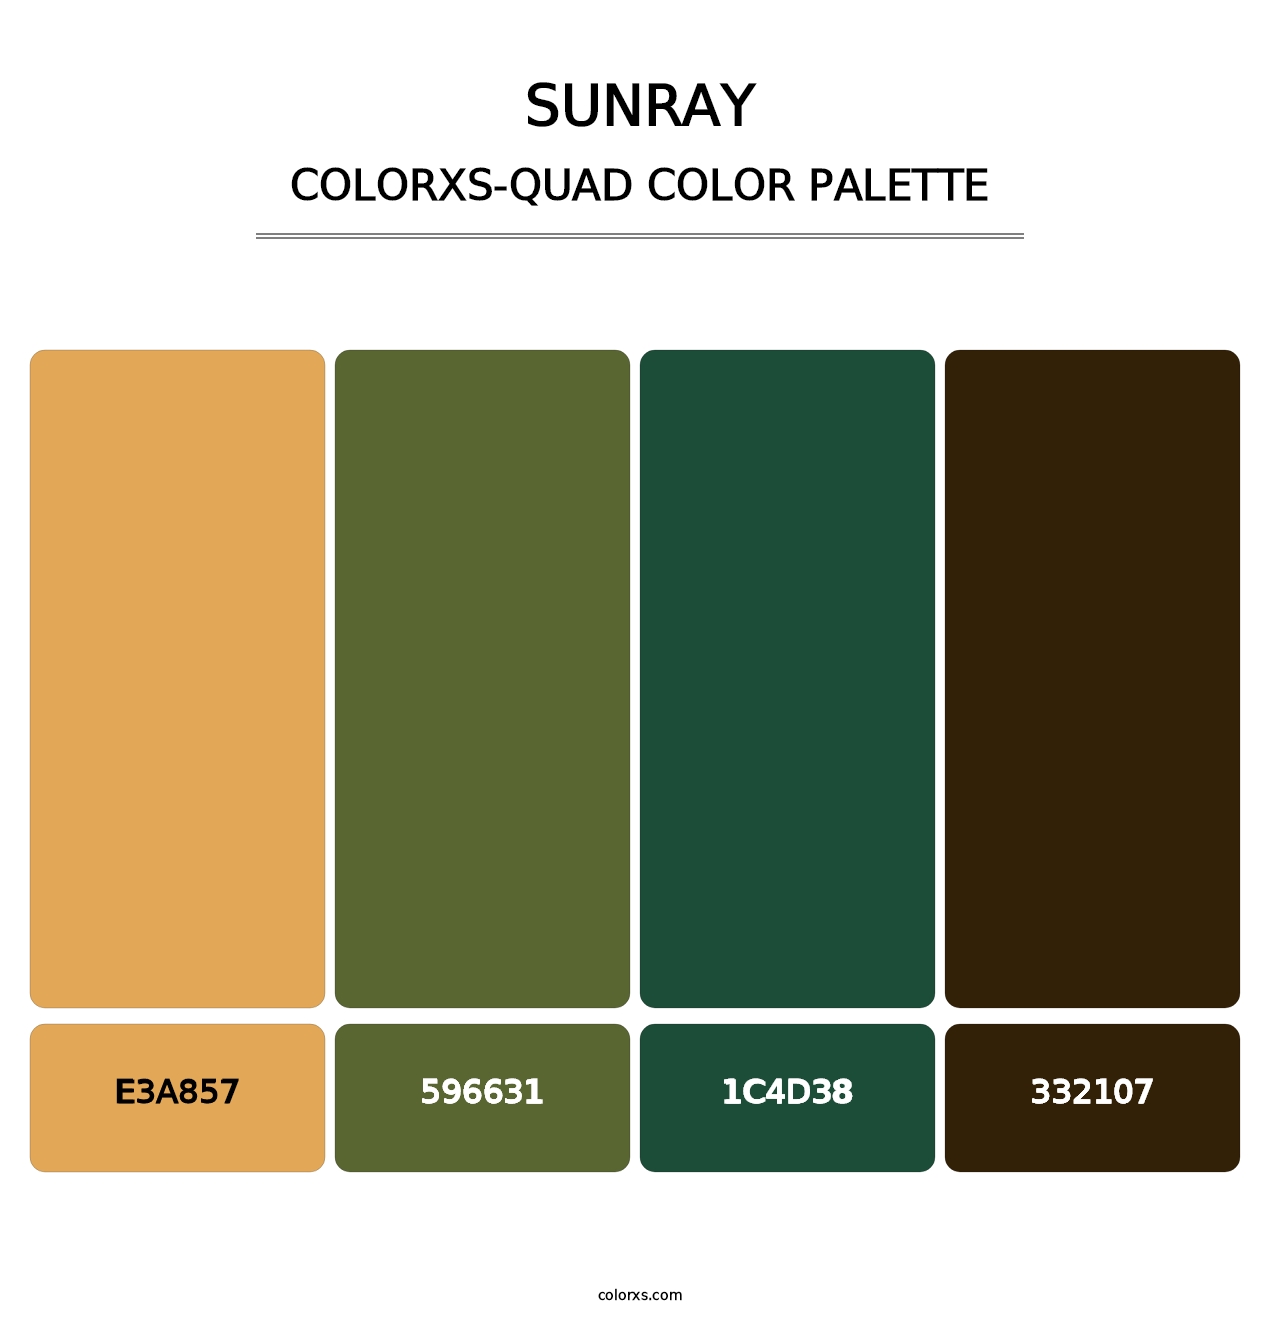 Sunray - Colorxs Quad Palette